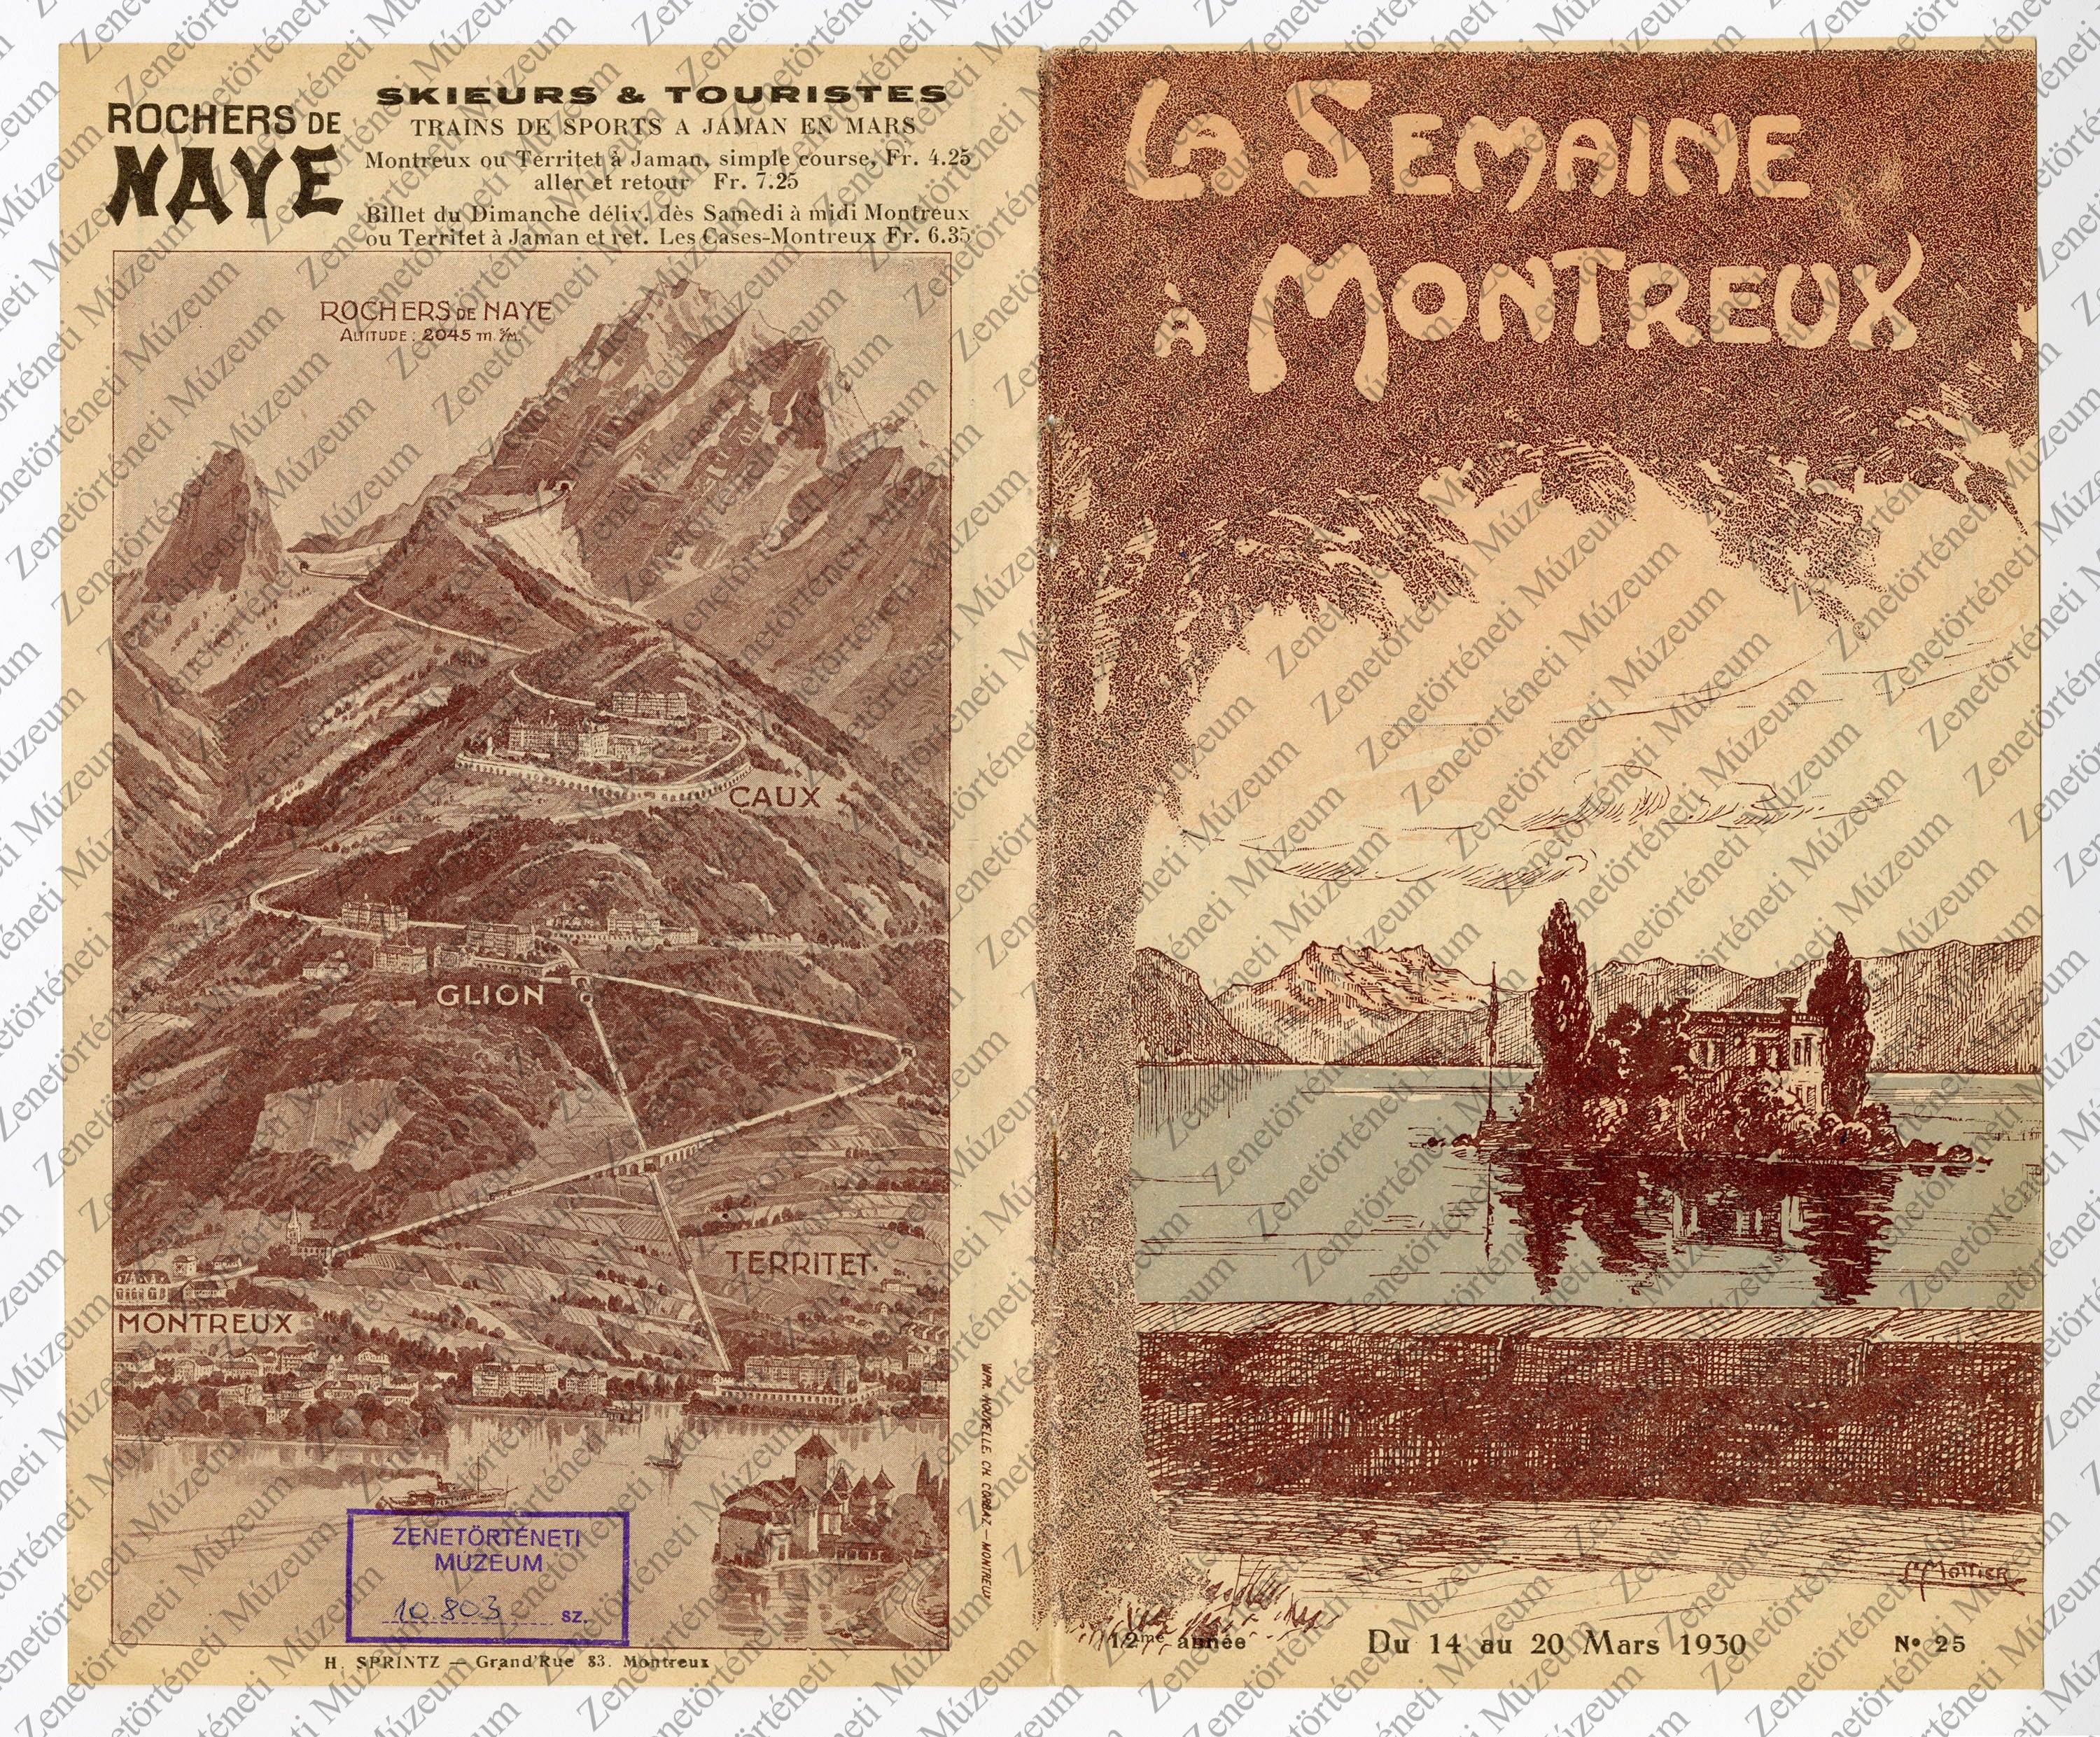 La Semaine à Montreux - műsorfüzet, 1930. márc. 14-20. (Zenetörténeti Múzeum CC BY-NC-SA)